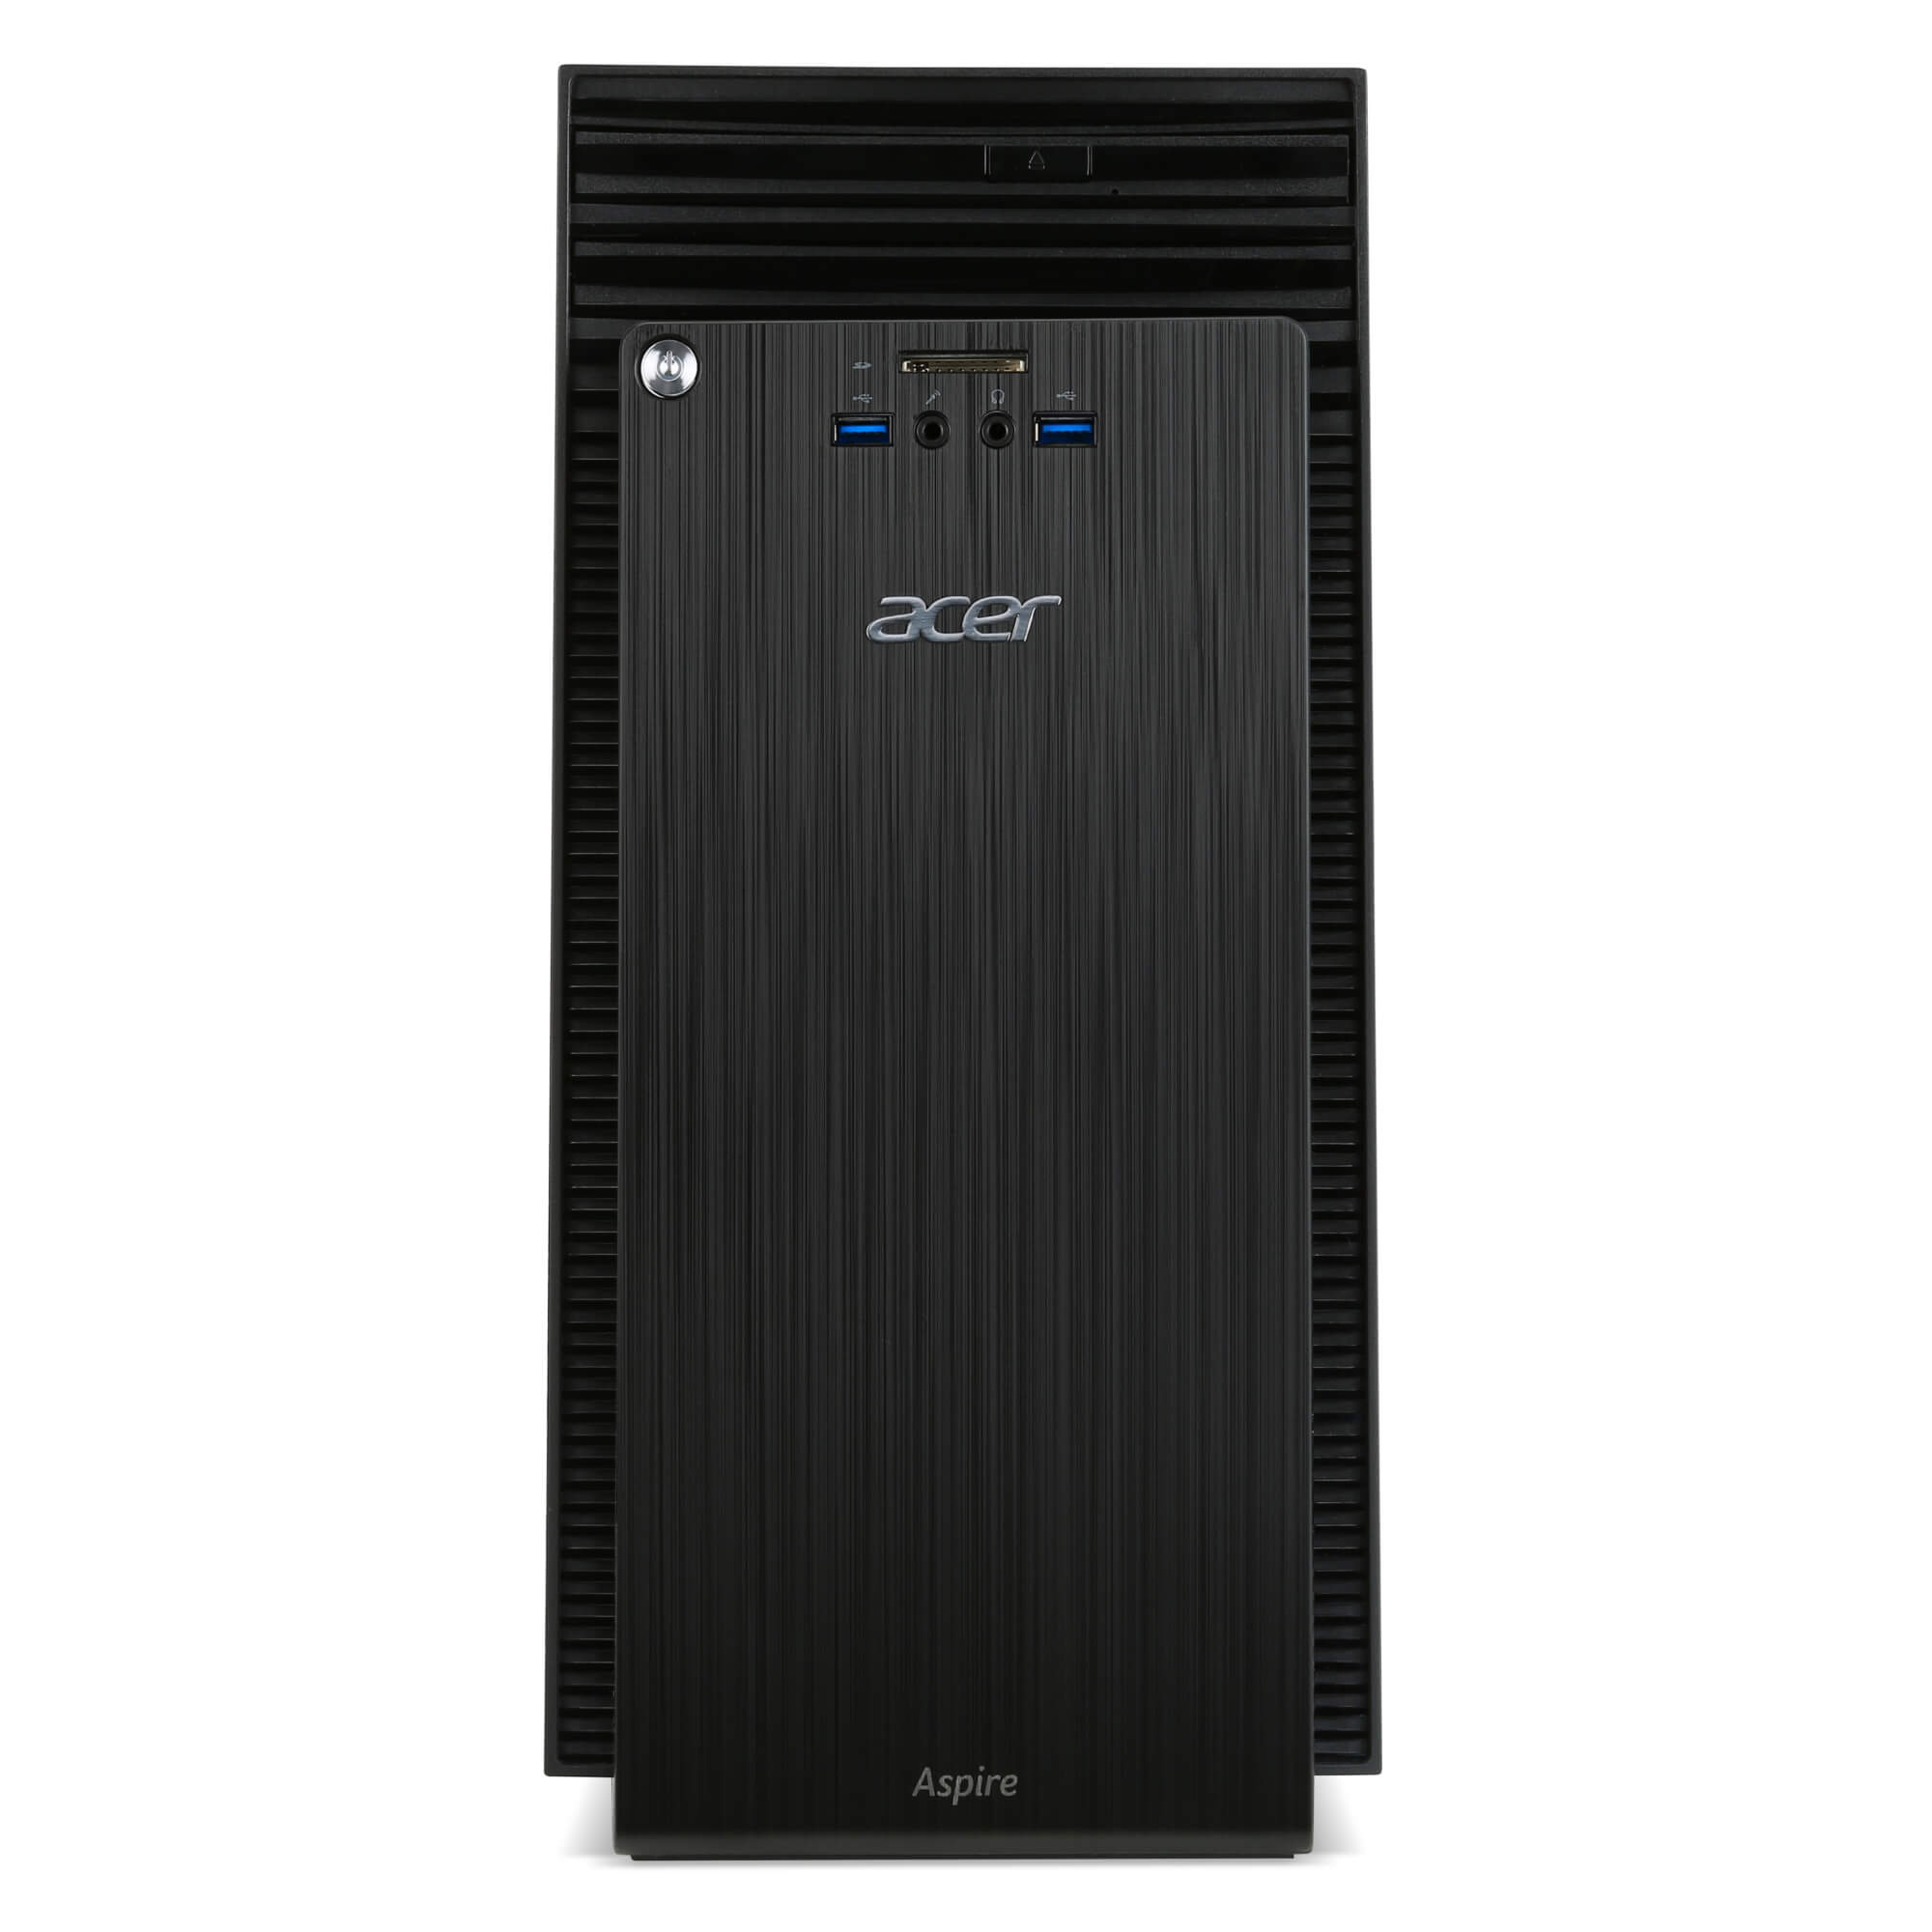  Sistem Desktop PC Acer ATC-710, Intel Core i5-6400, 4GB DDR3, HDD 1TB, AMD R5-310 2GB, FreeDOS 